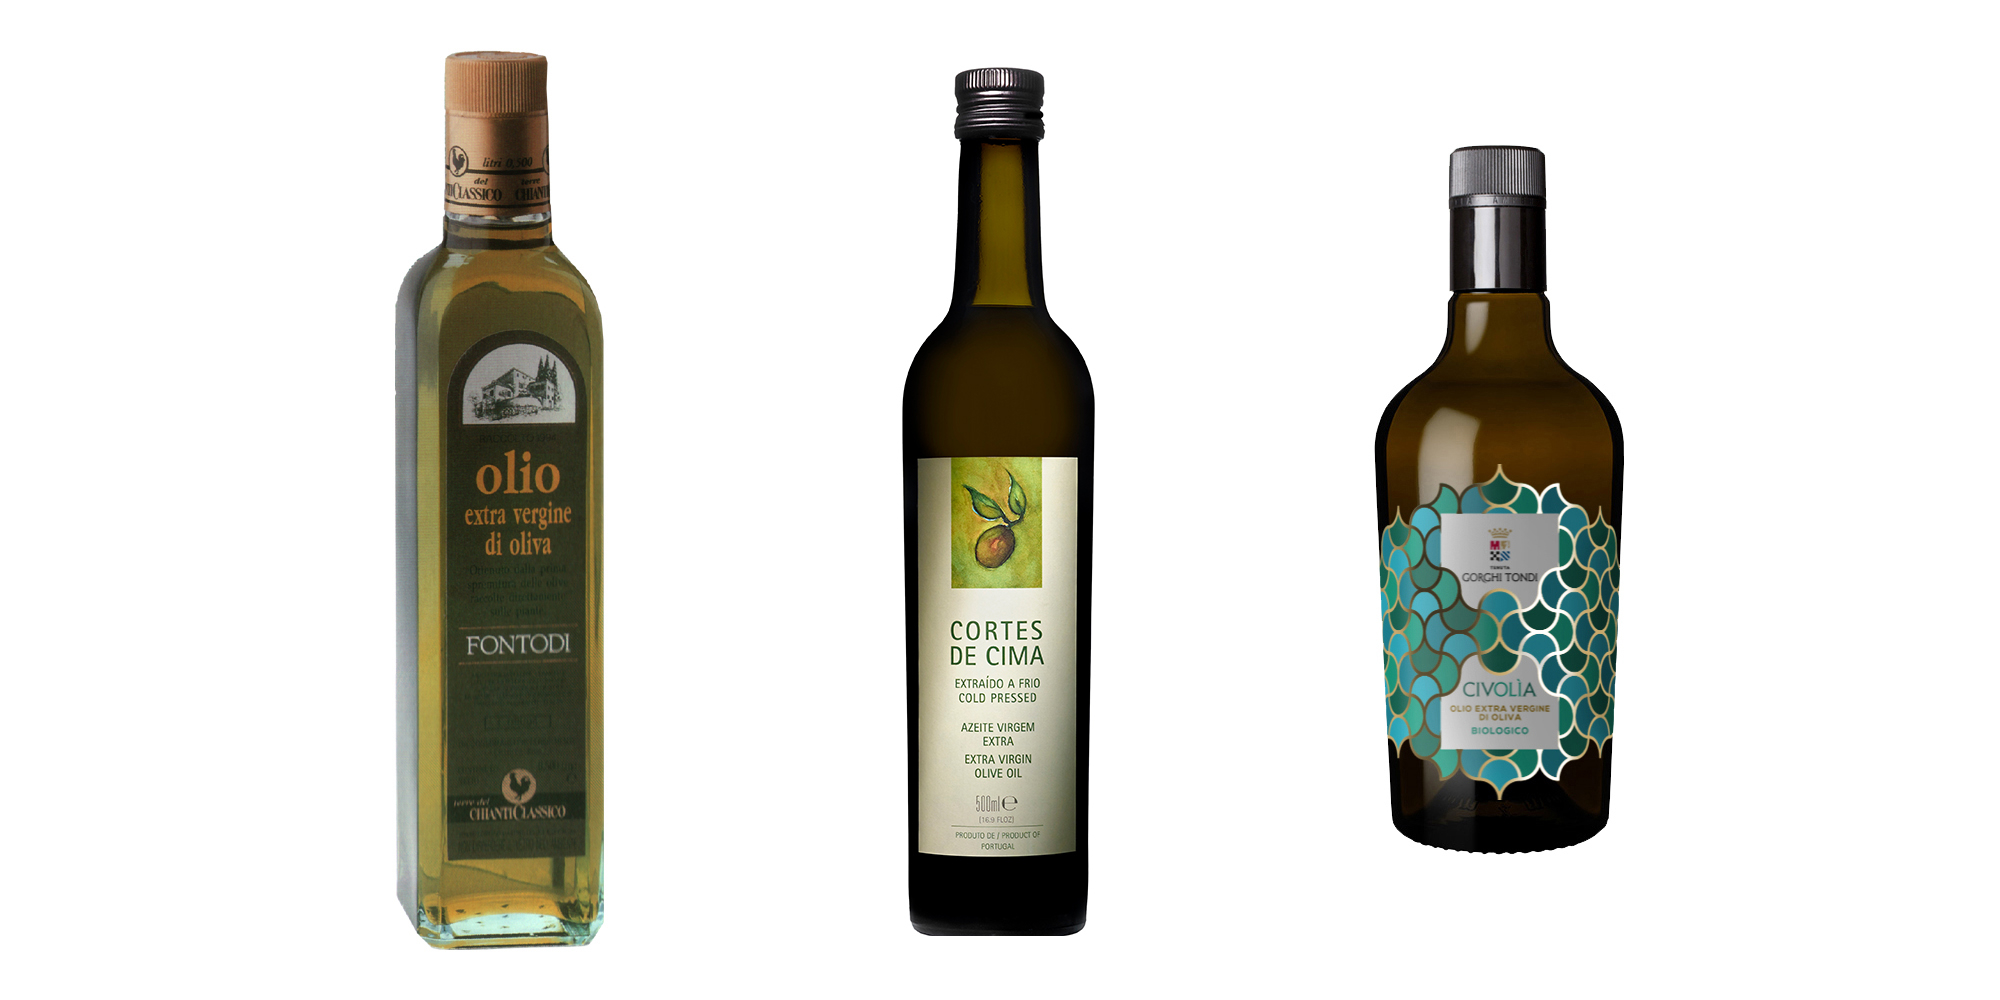 Wir lieben Olivenöle! Hier ein Sonderangebot